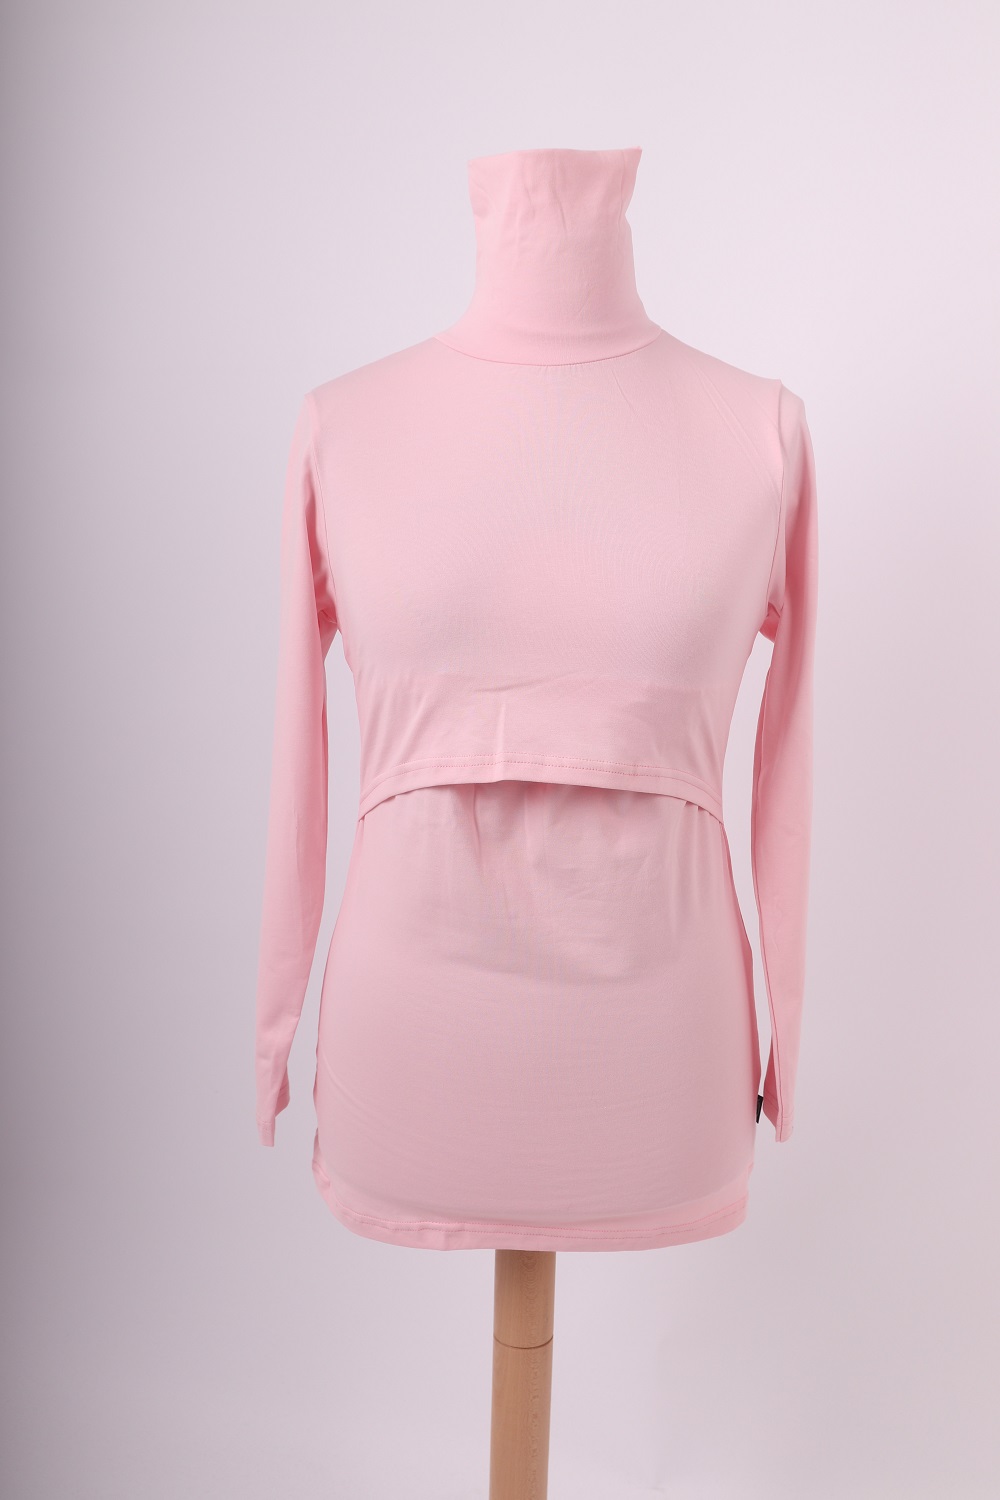 Breast-feeding roll-colar T-shirt Katerina, light pink M/L